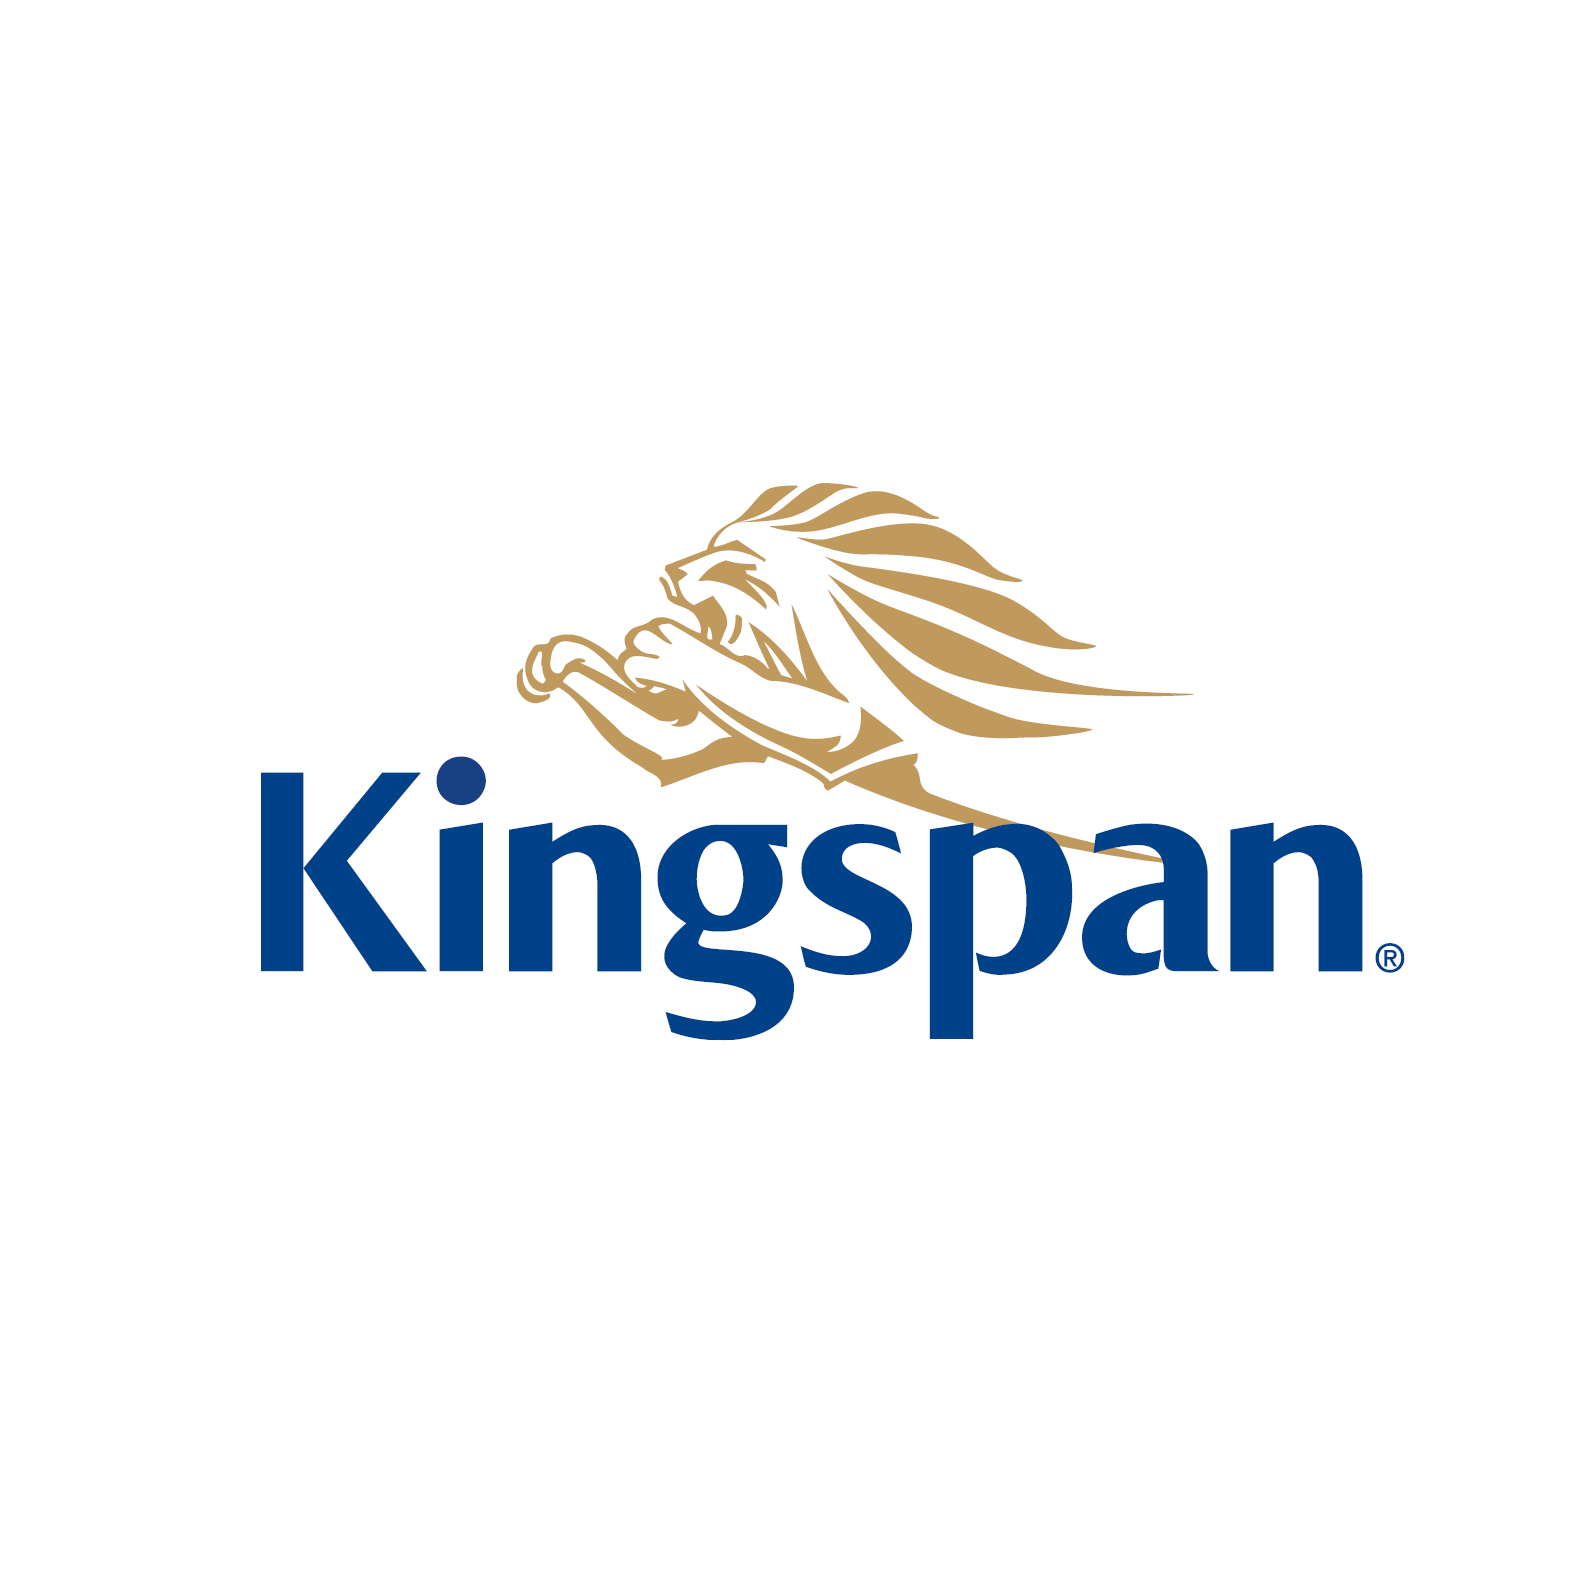 Kingspan Water & Energy